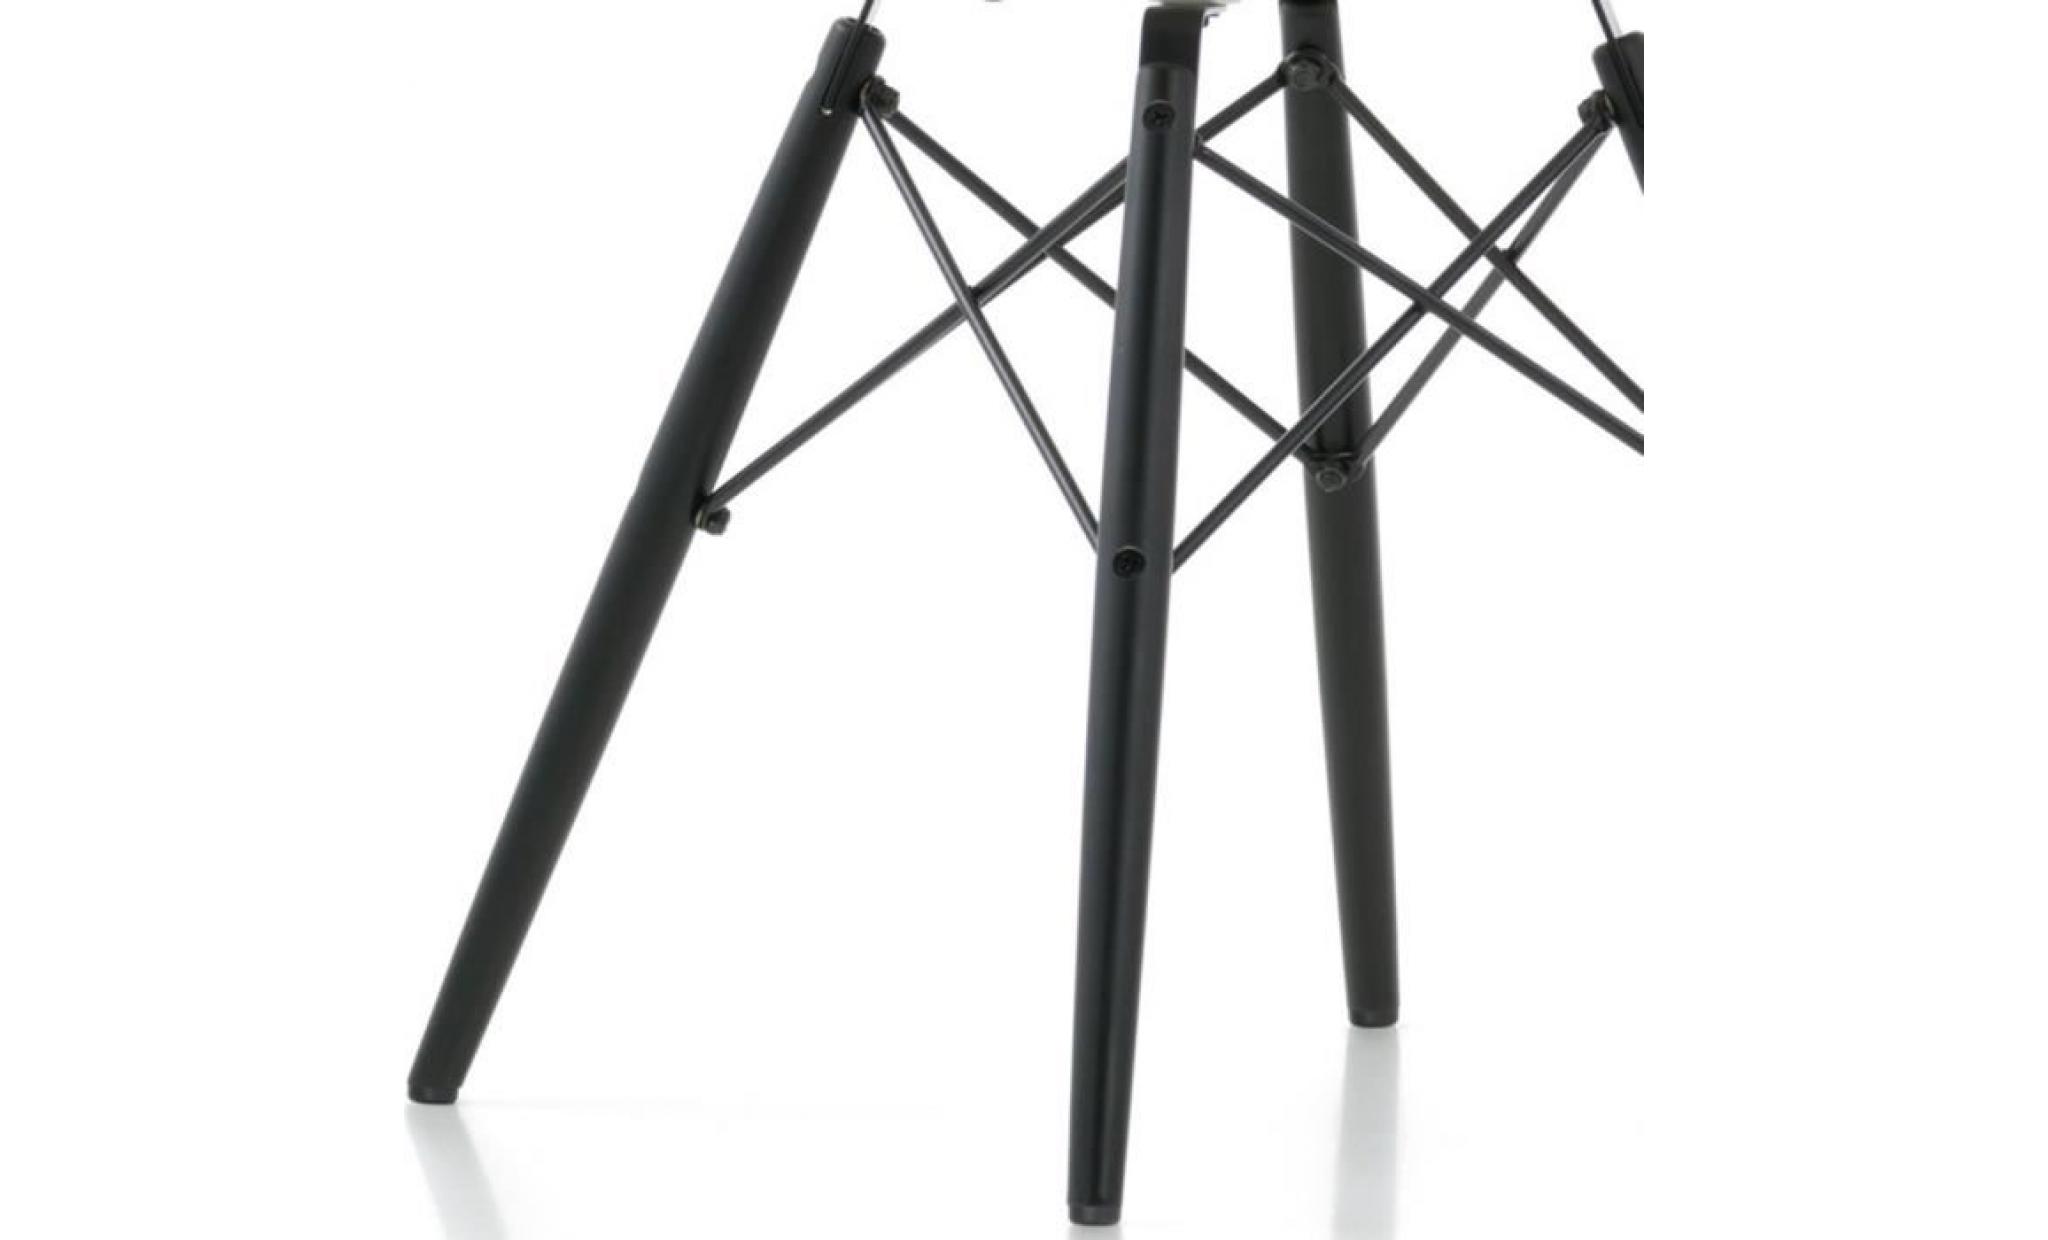 1 x fauteuil design retro inspiration charles eames daw pieds en bois noir assise silver mobistyl® pas cher